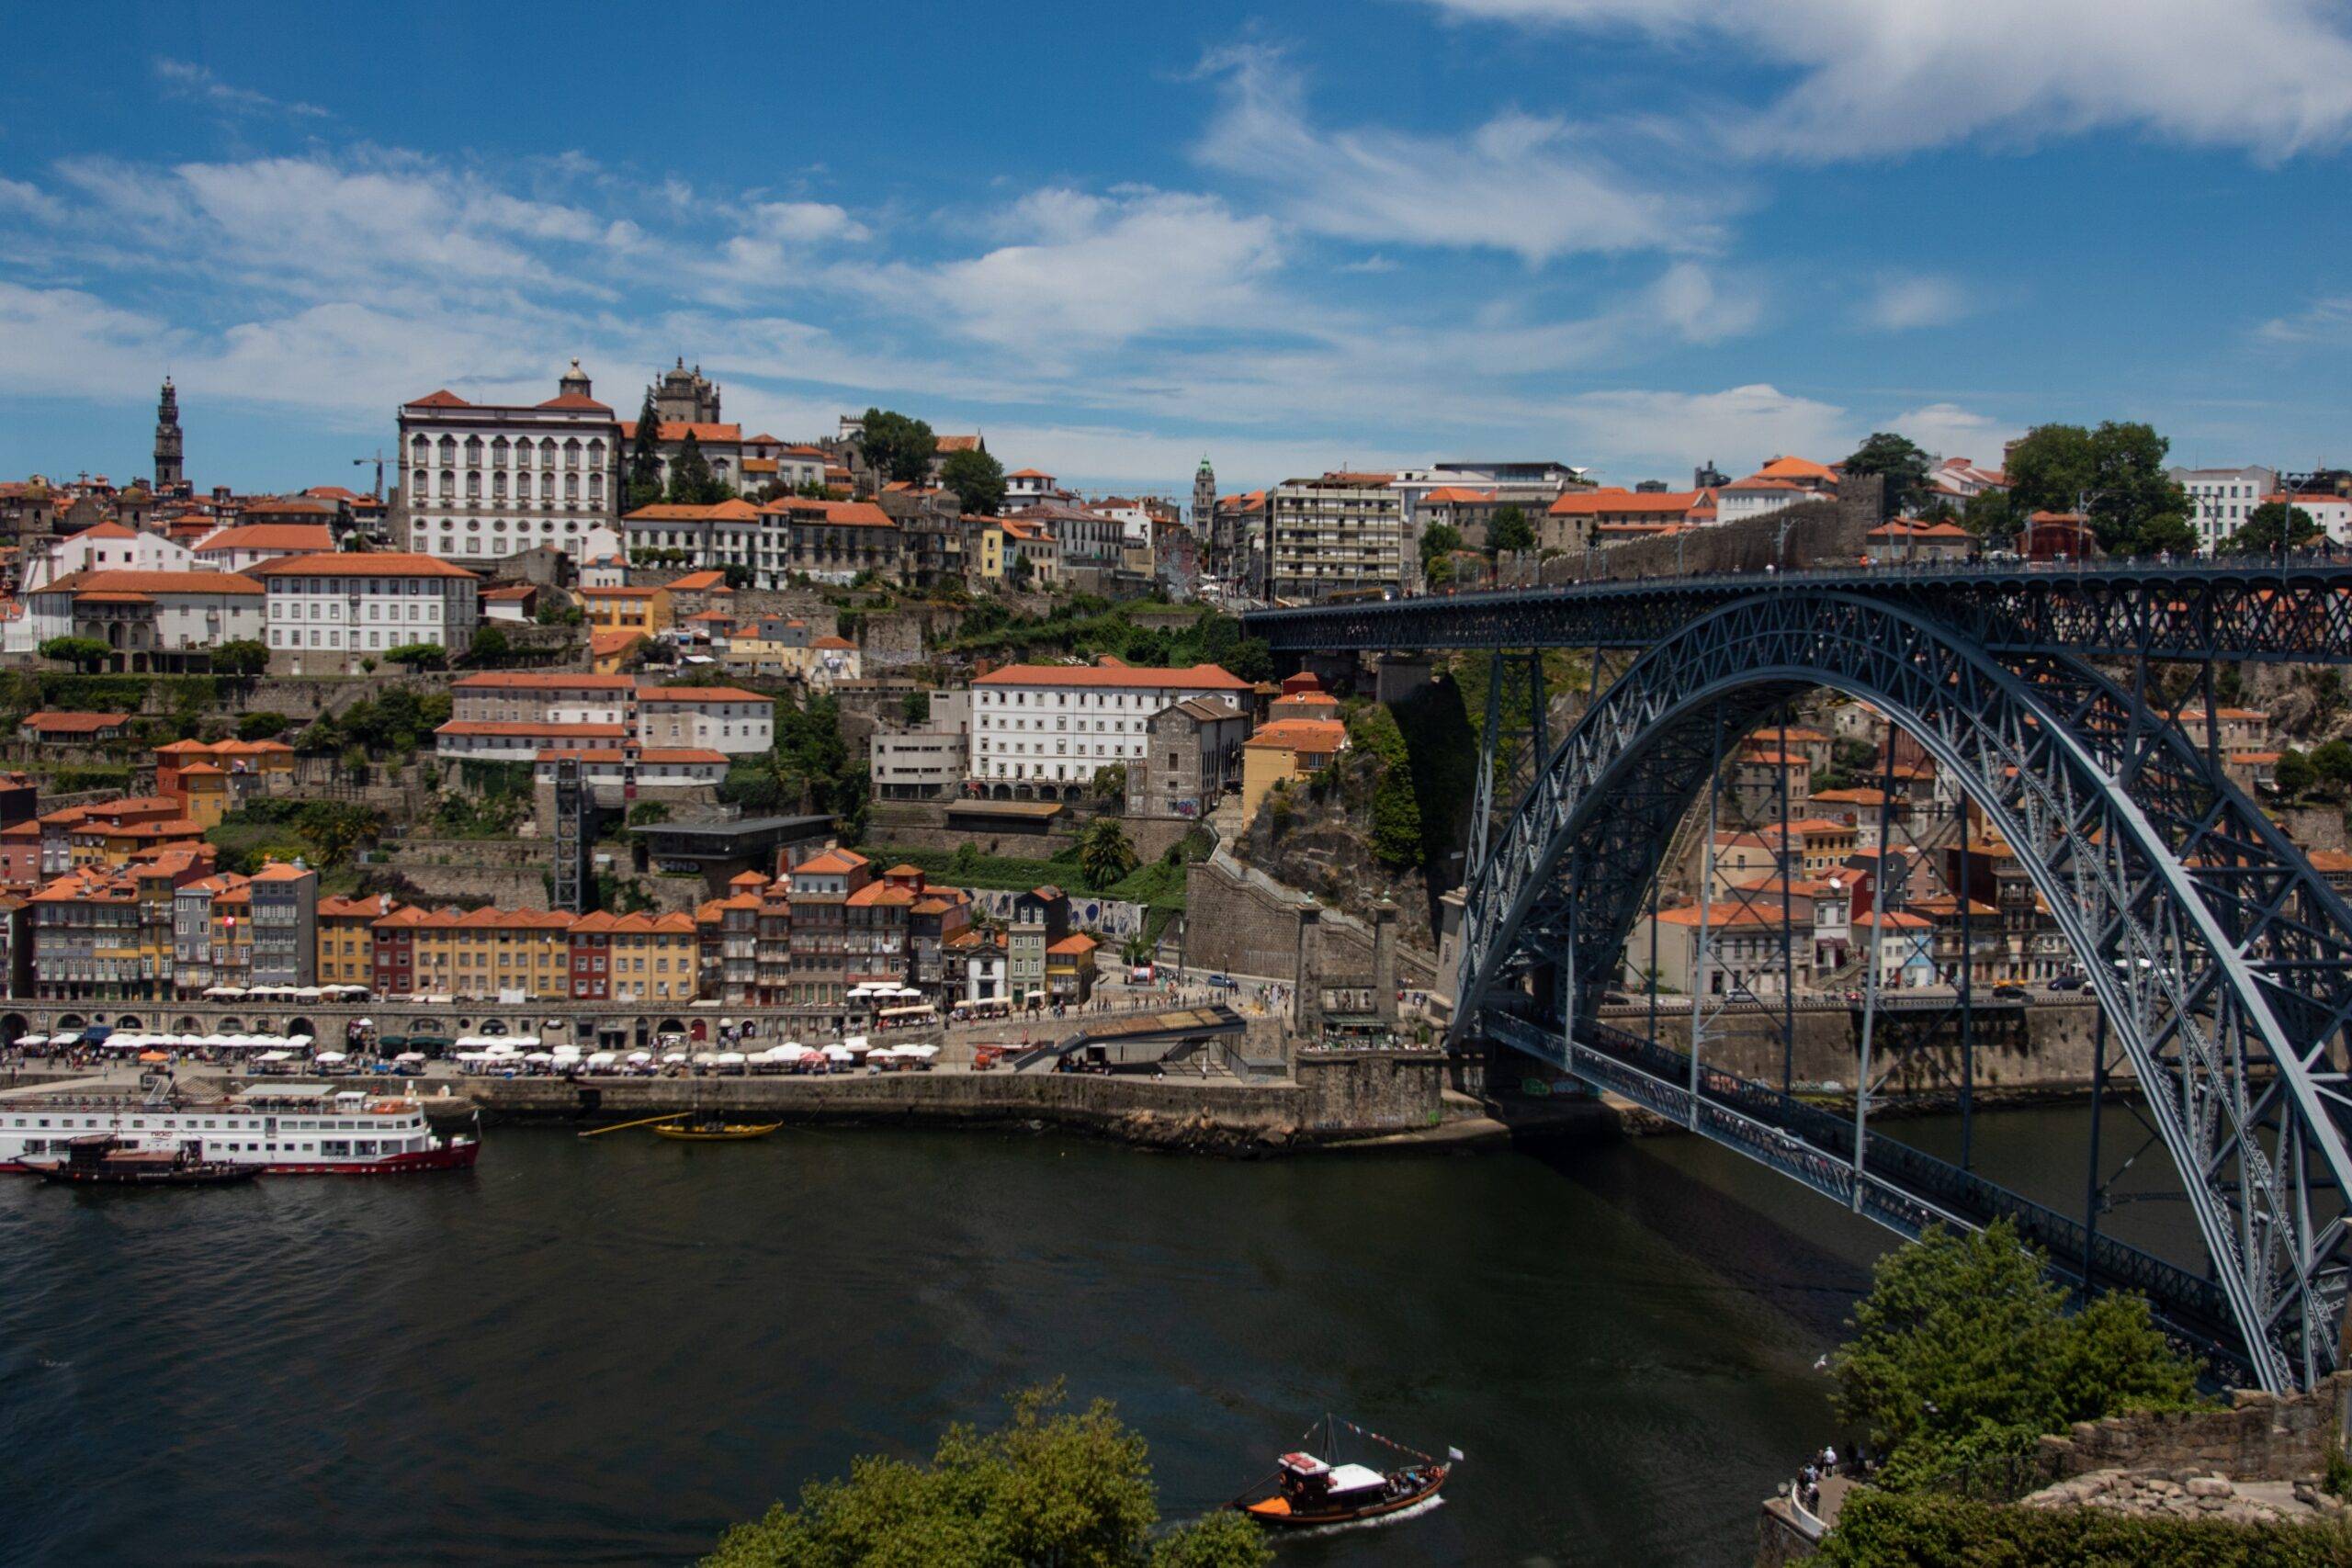 Porto investe 6 milhoes em comunidades municipais para uma “energia limpa”